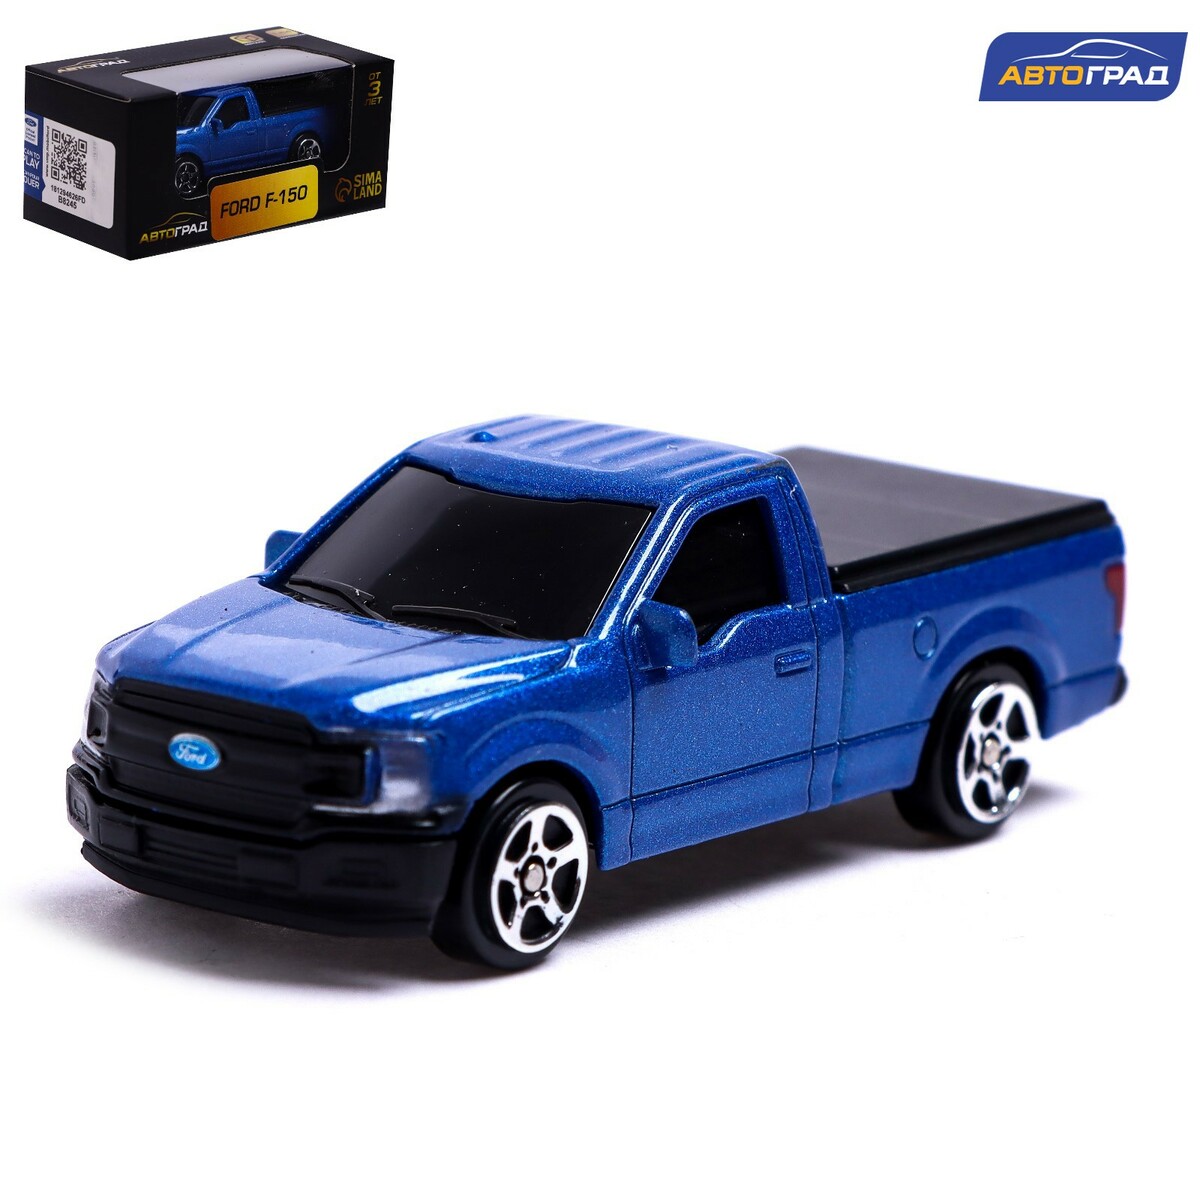 Машина металлическая ford f-150, 1:64, цвет синий ford f 150 модели 2wd